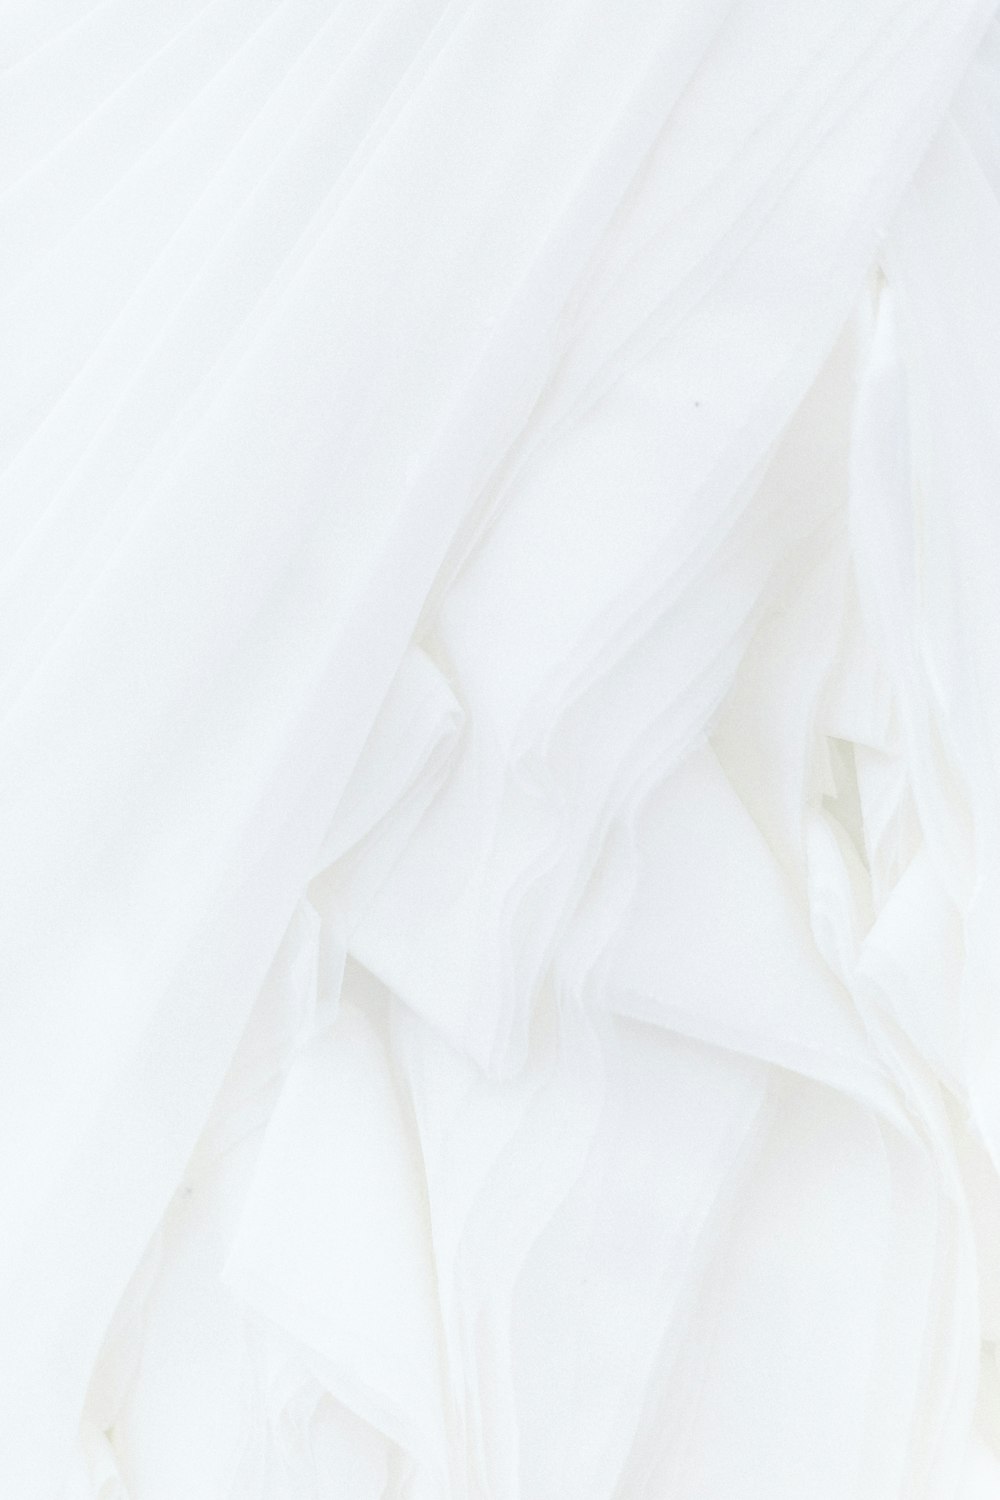 Vải lụa luôn là symphonia của sự sang trọng và đẳng cấp. Chất liệu mềm mại và óng ả của silk là một lựa chọn hoàn hảo cho những chiếc váy dạ hội hoặc áo dài truyền thống. Hãy cùng ngắm nhìn những bức ảnh về silk để điều này được chứng minh.